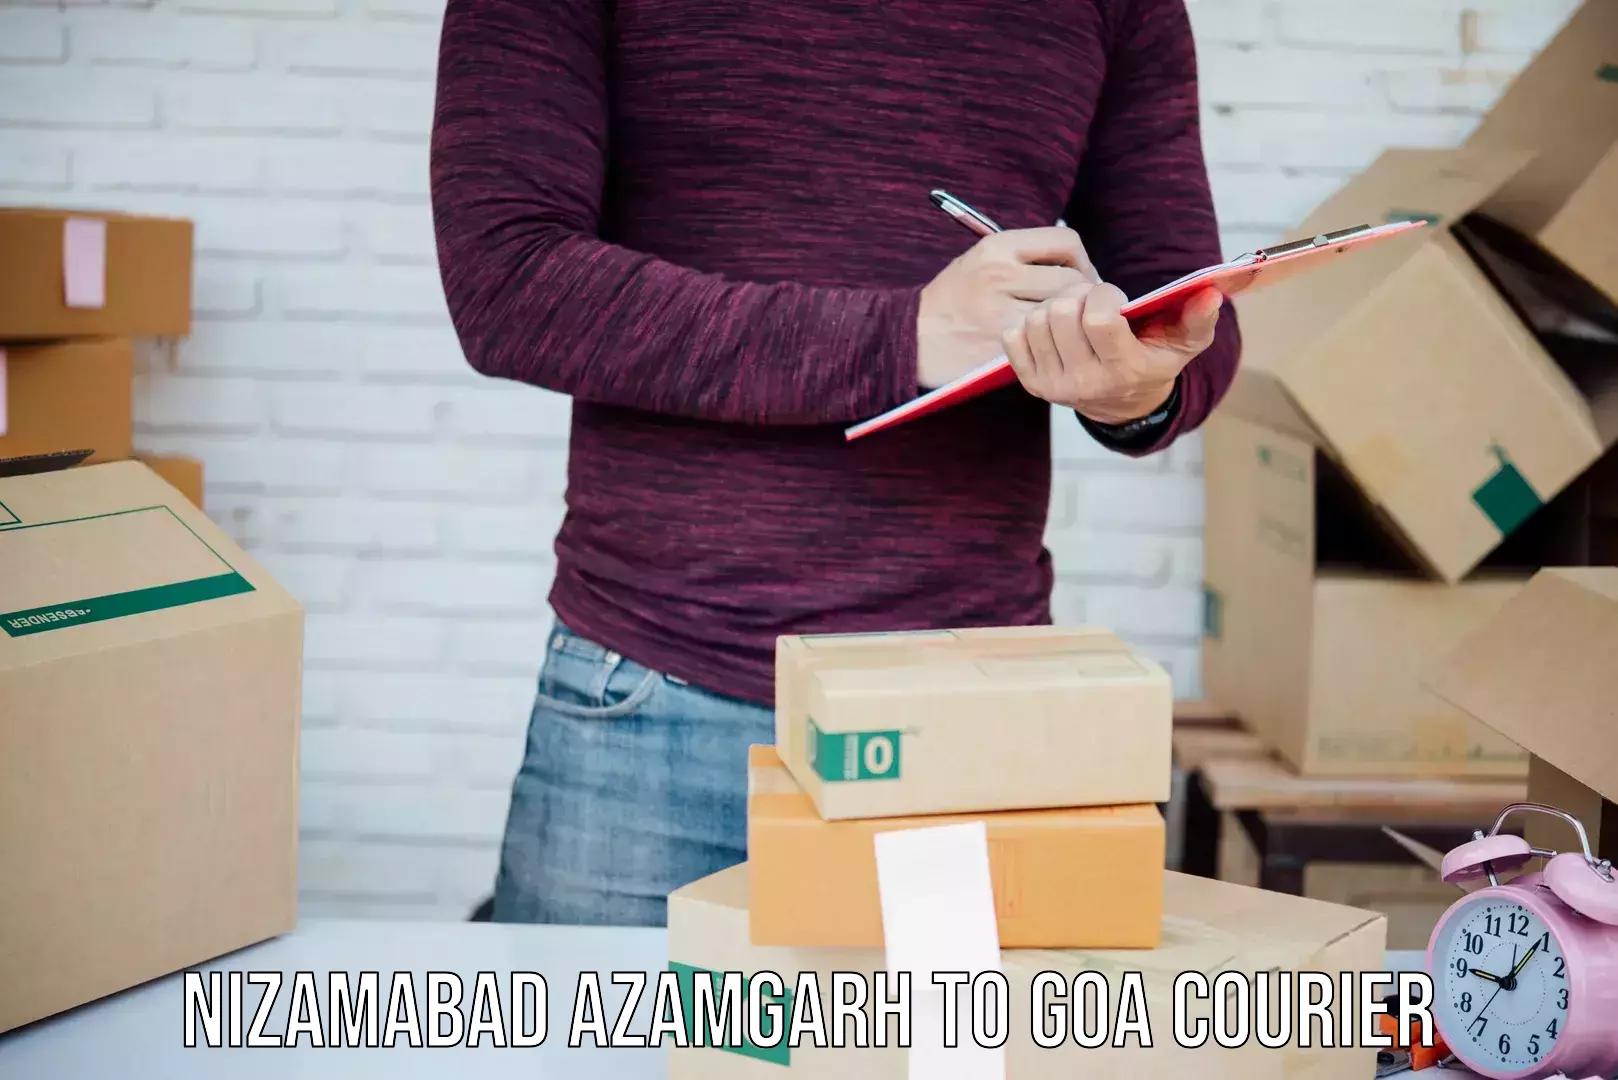 International parcel service Nizamabad Azamgarh to Goa